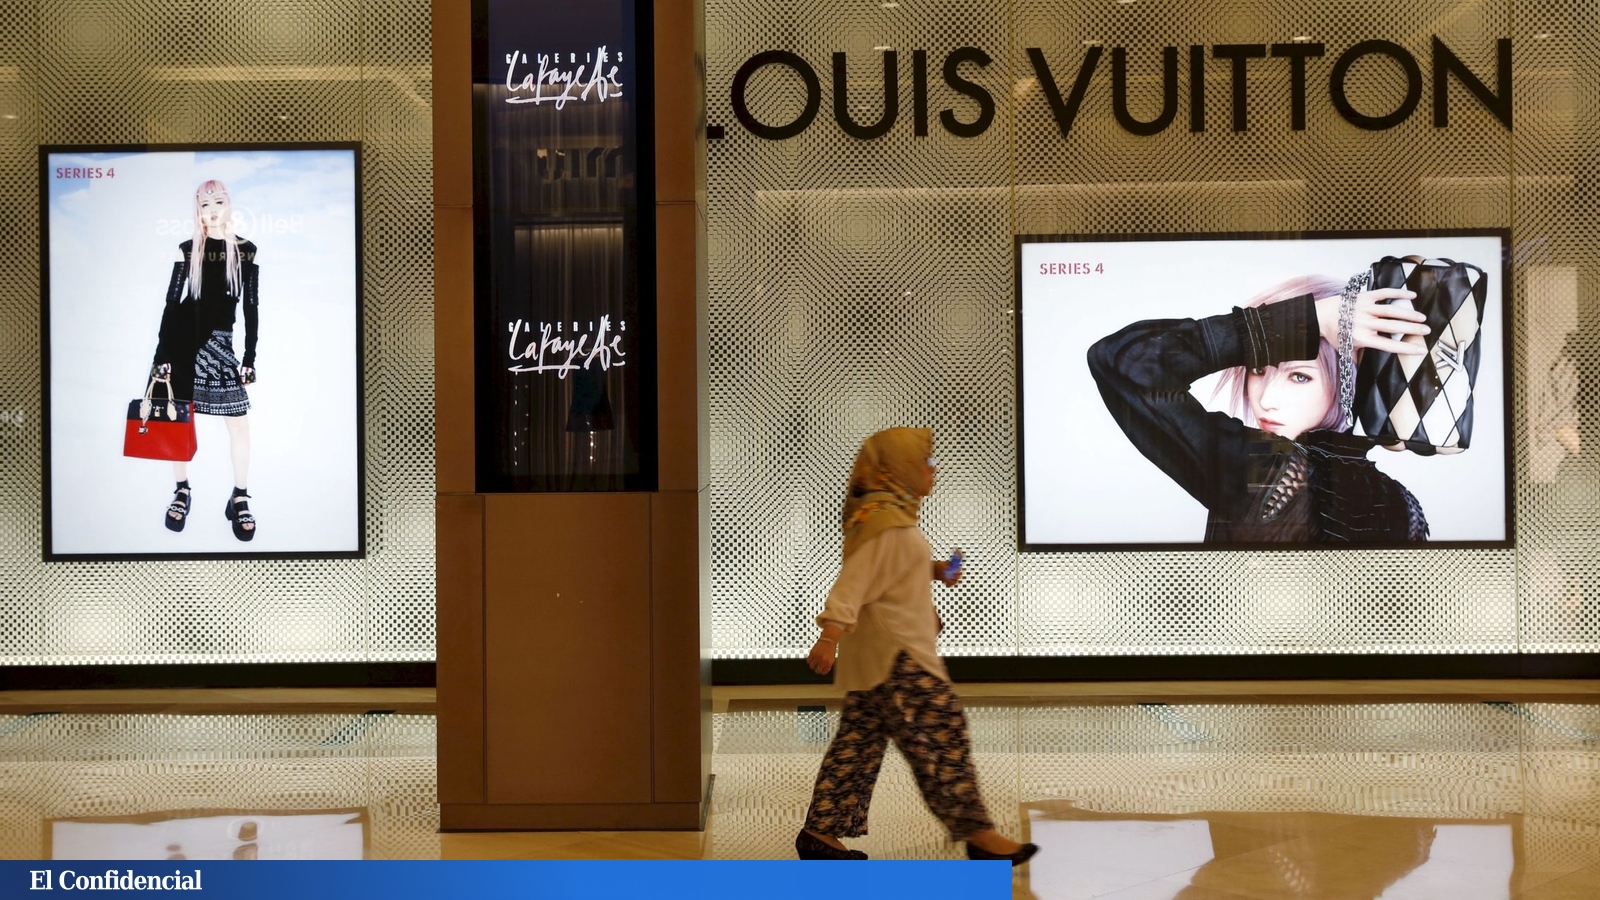 Louis Vuitton se corona como la empresa mejor valuada en París